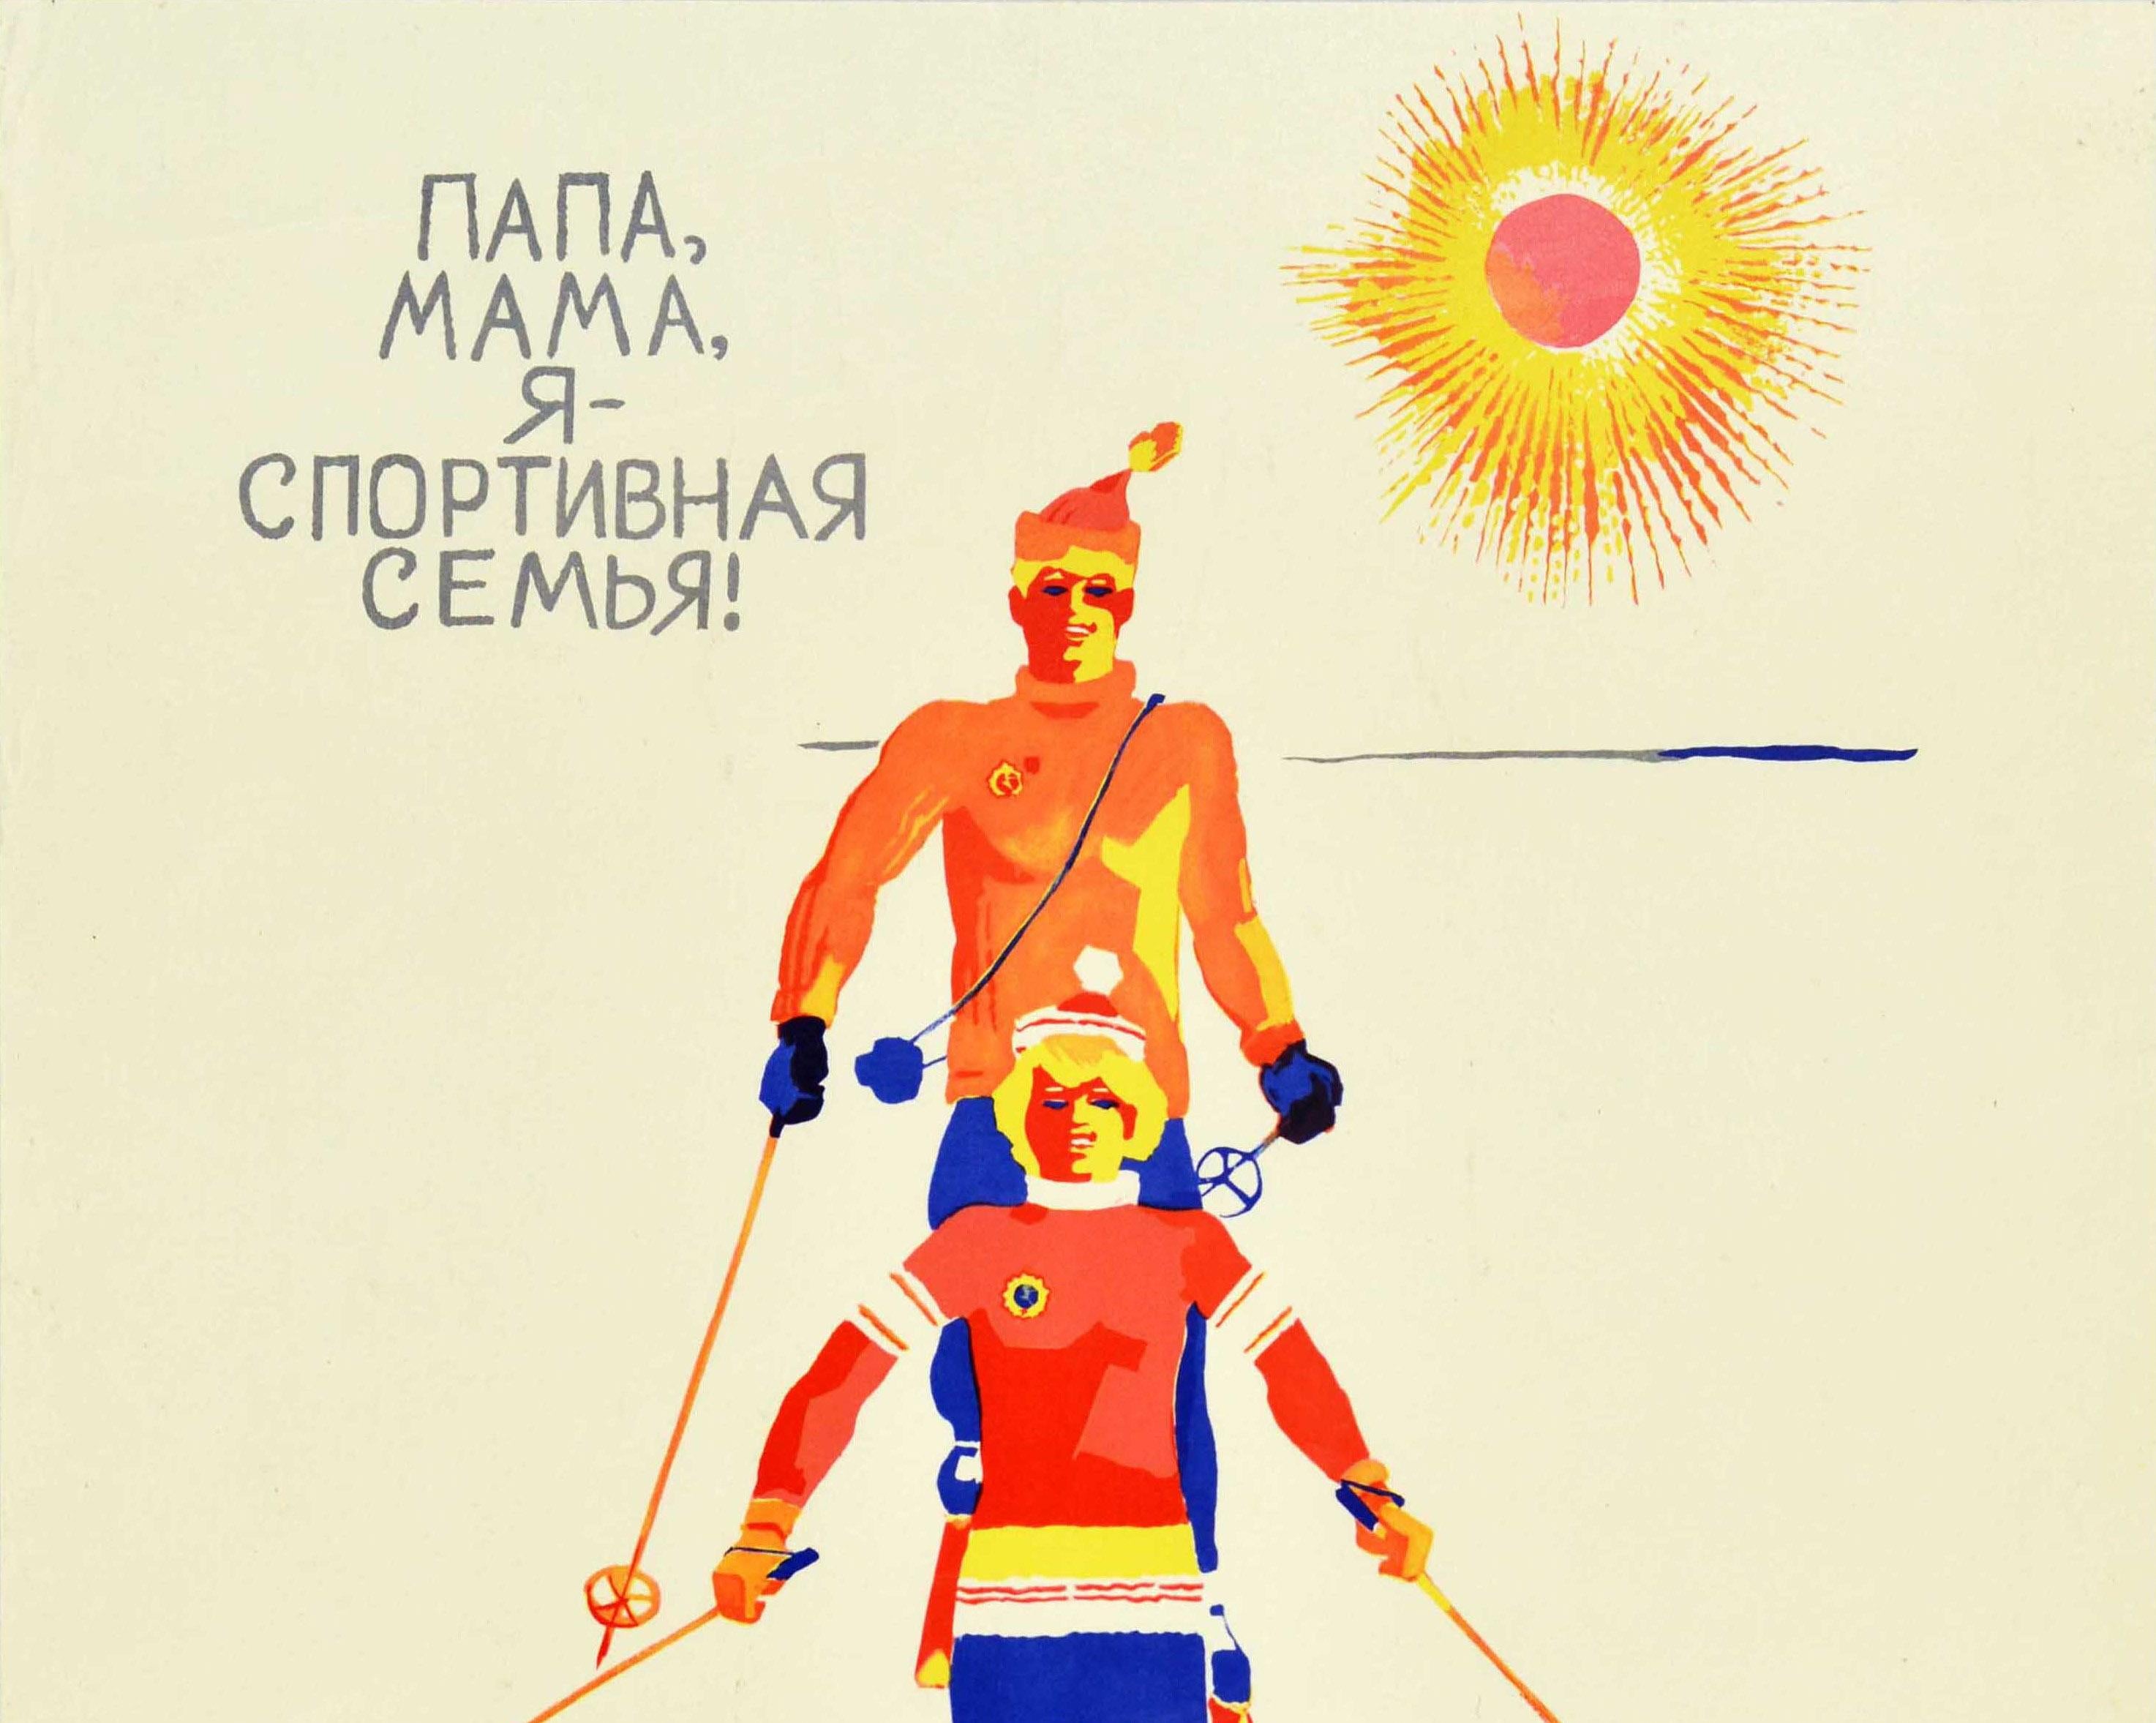 Originales sowjetisches Sportplakat im Vintage-Stil, das eine lustige und farbenfrohe Illustration einer Familie auf dem Ski zeigt, die dem Betrachter lächelt und skiert, in einer Linie mit einem Kind an der Vorderseite und Mutter und Vater